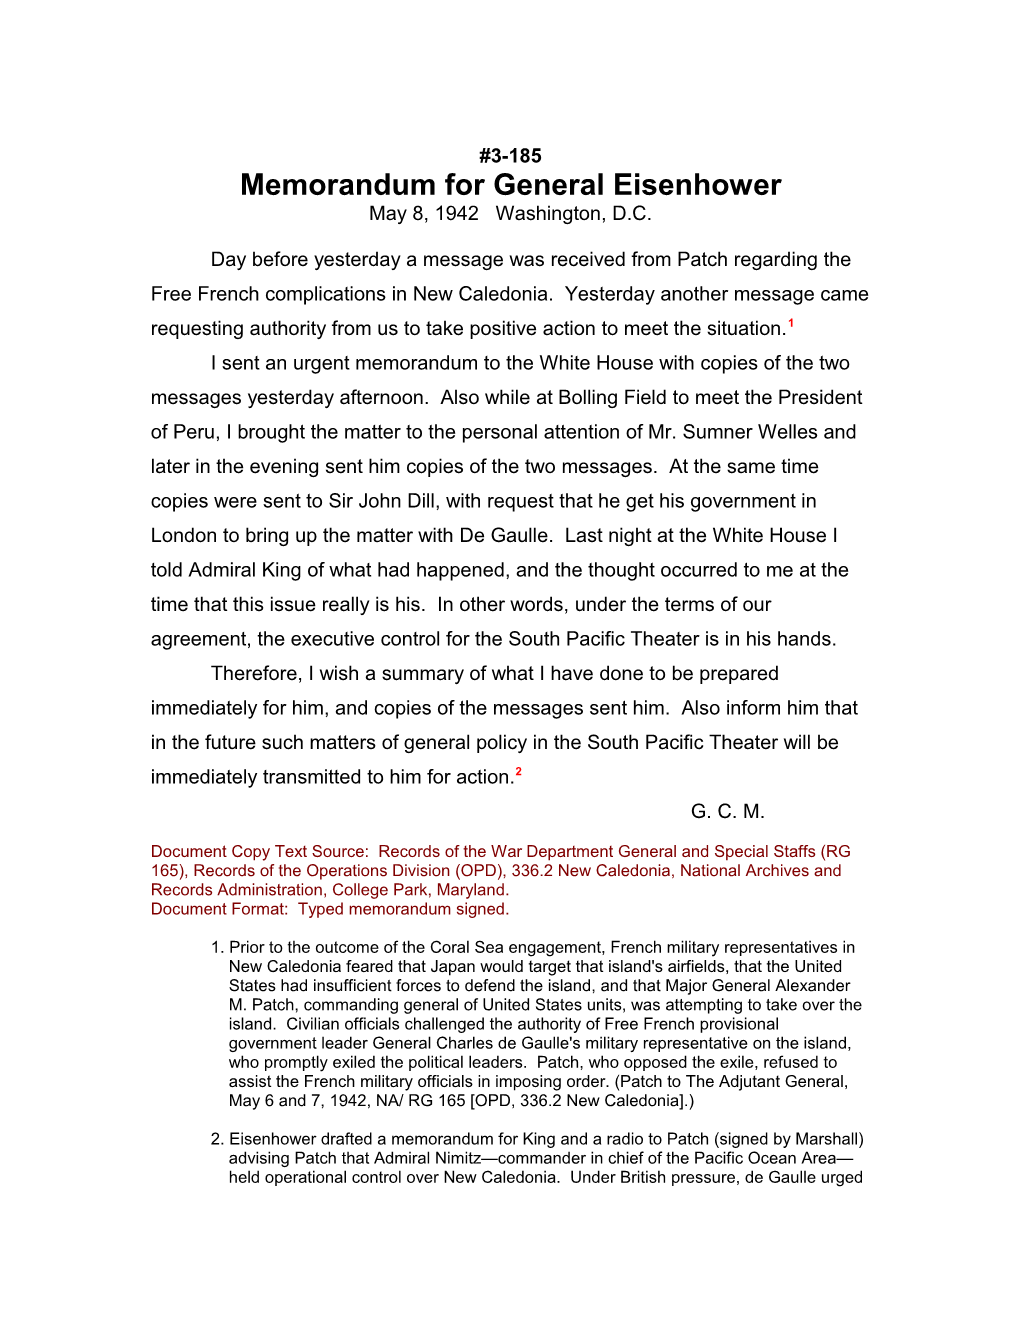 Memorandum for General Eisenhower